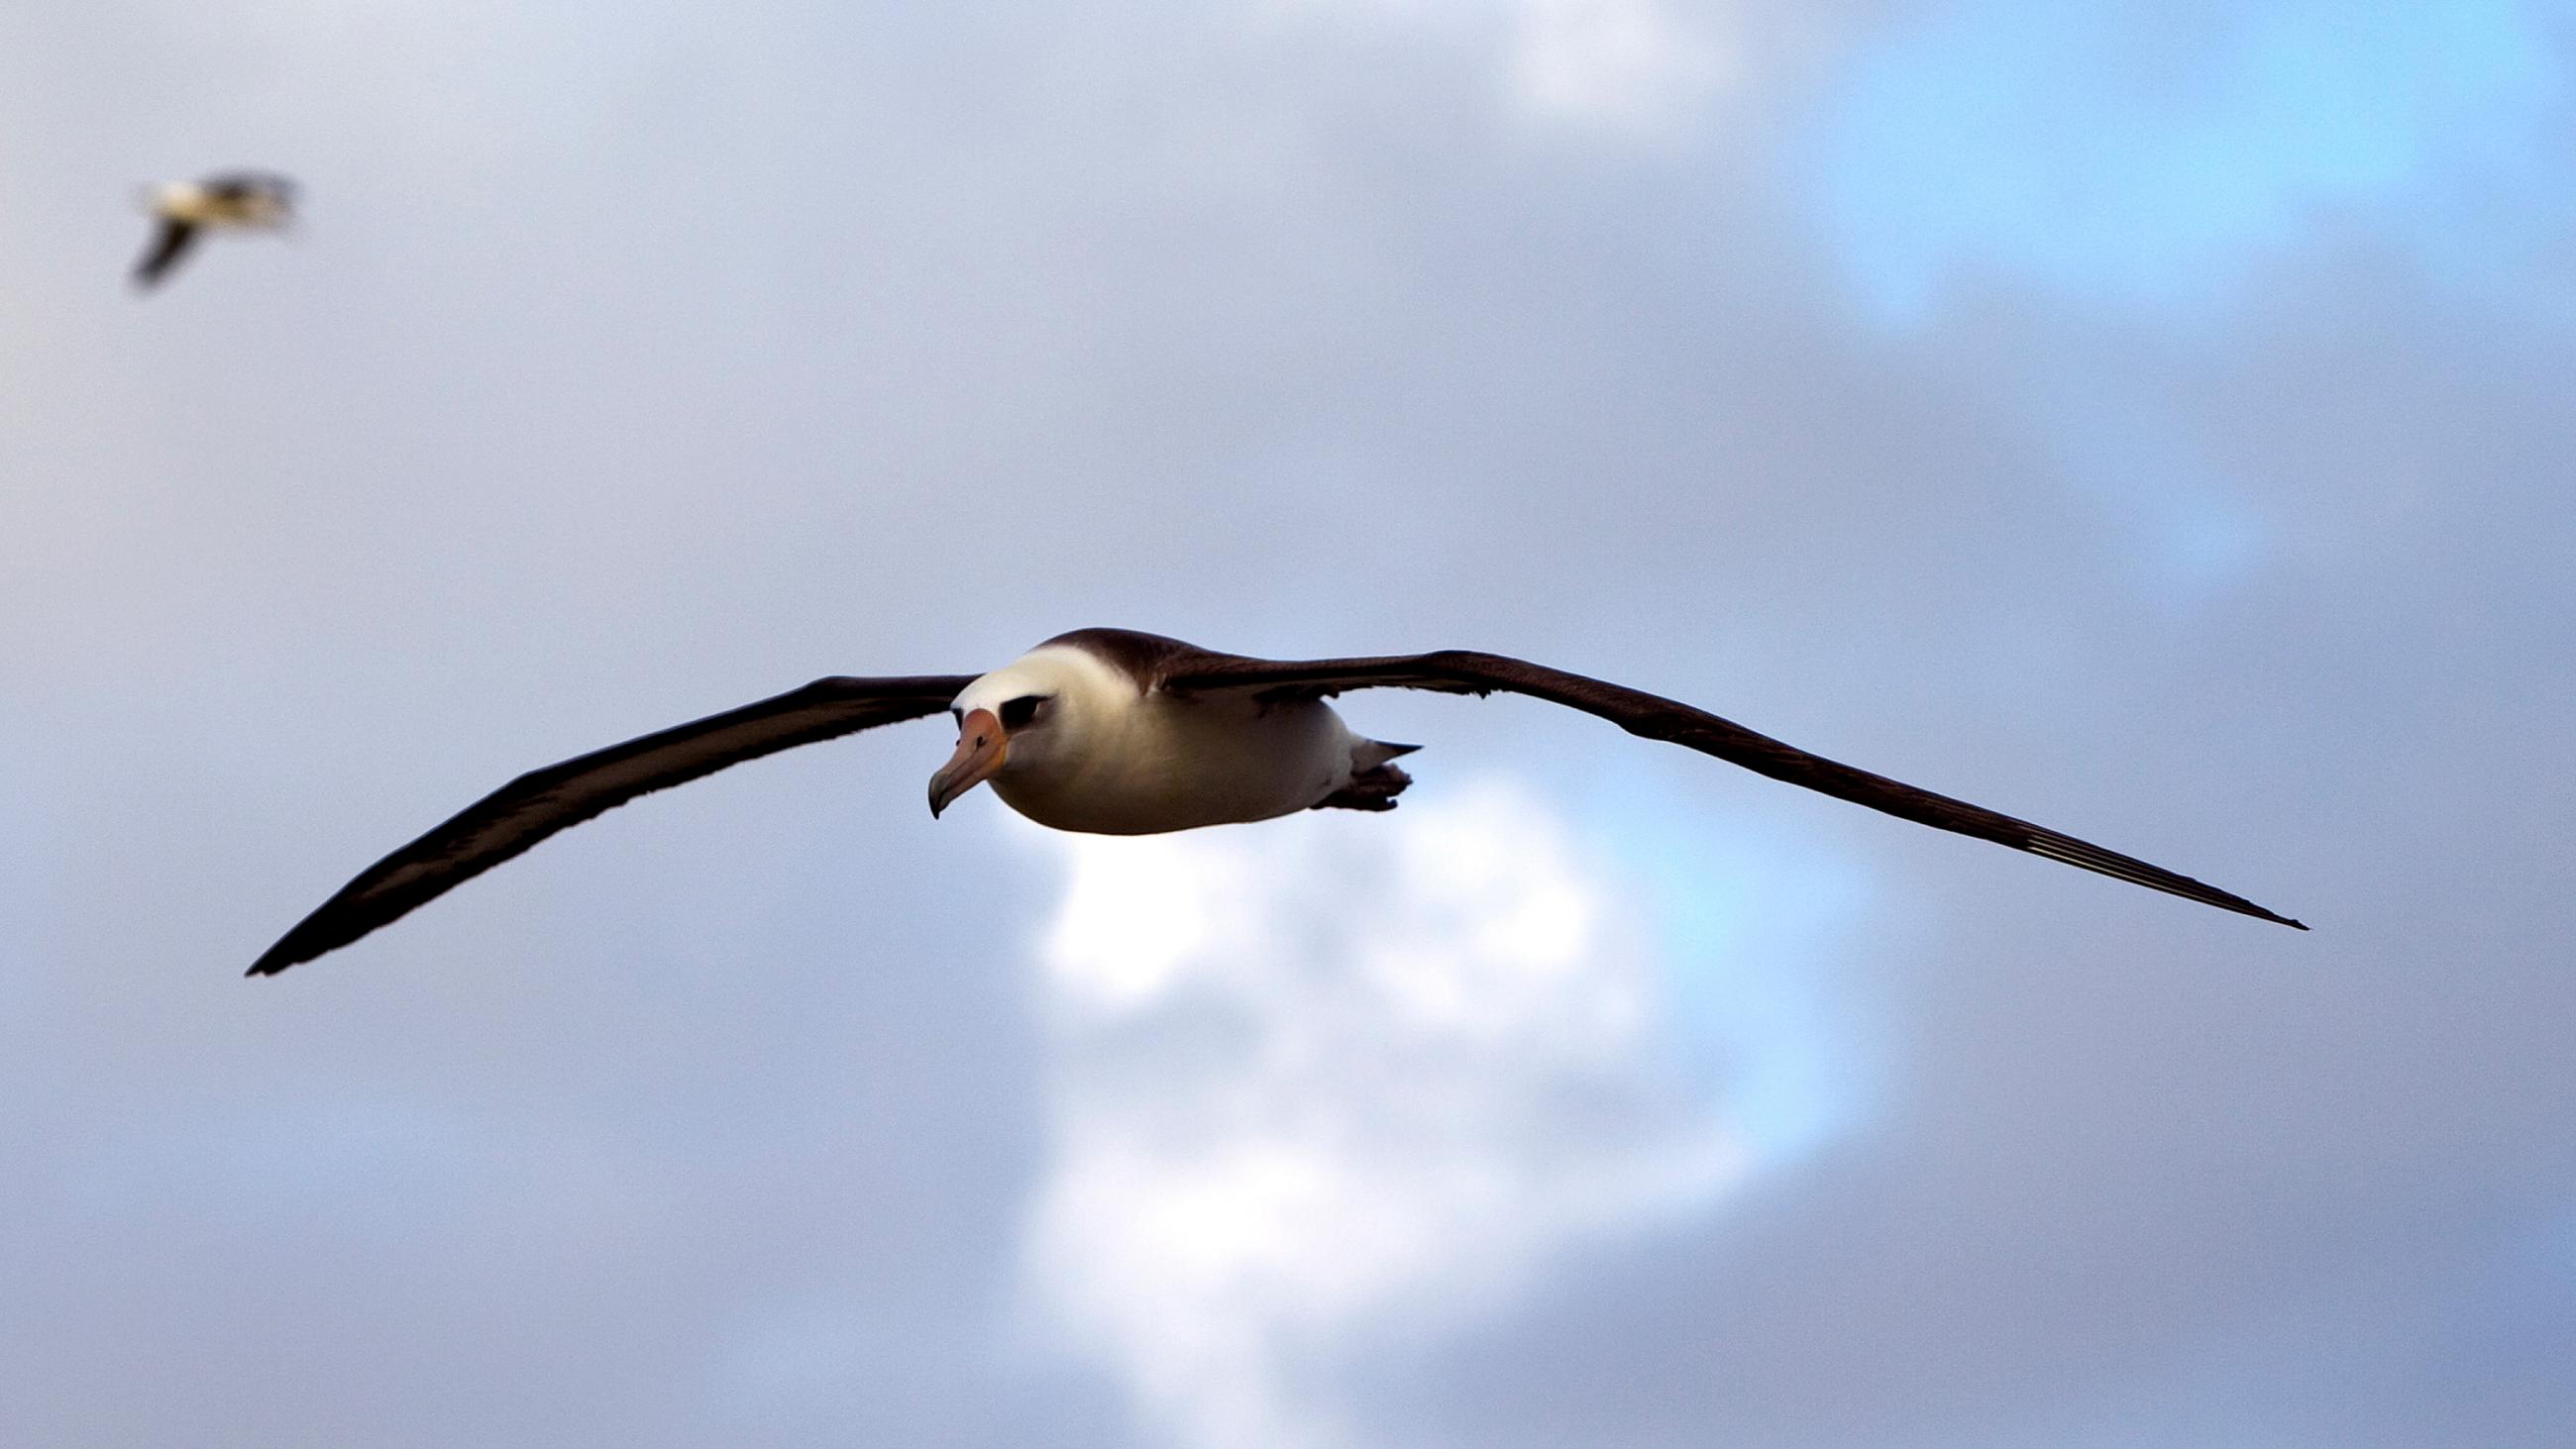 The photo shows a sea bird aloft against a blue sky. 